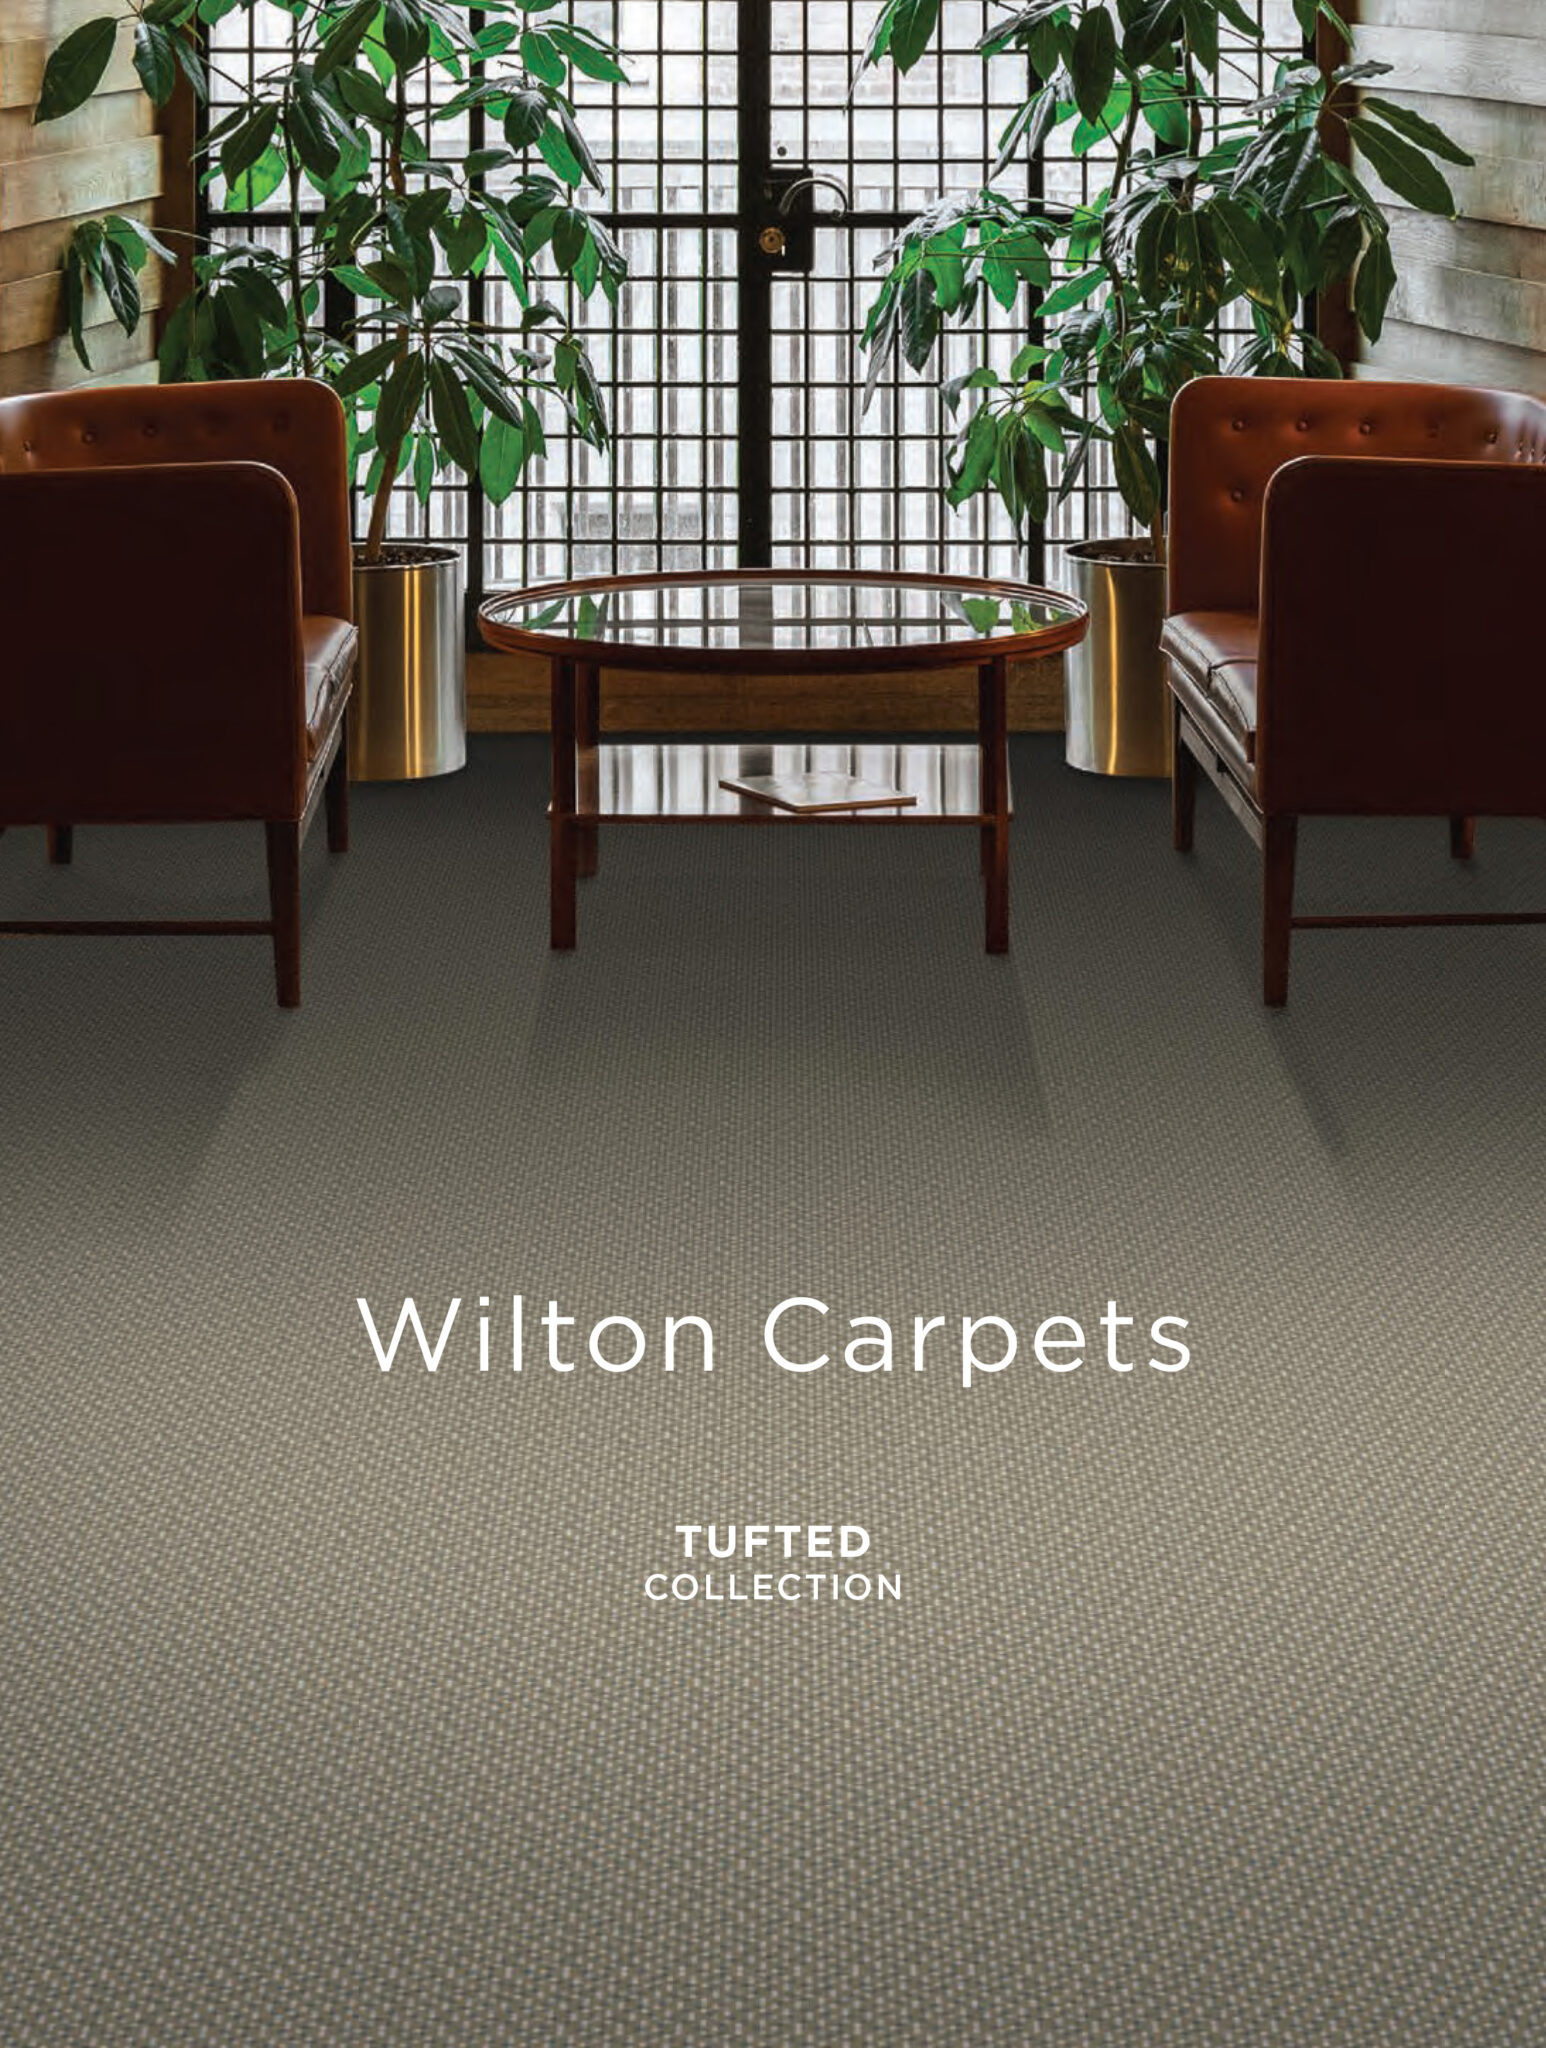 Full image - Wilton Carpets